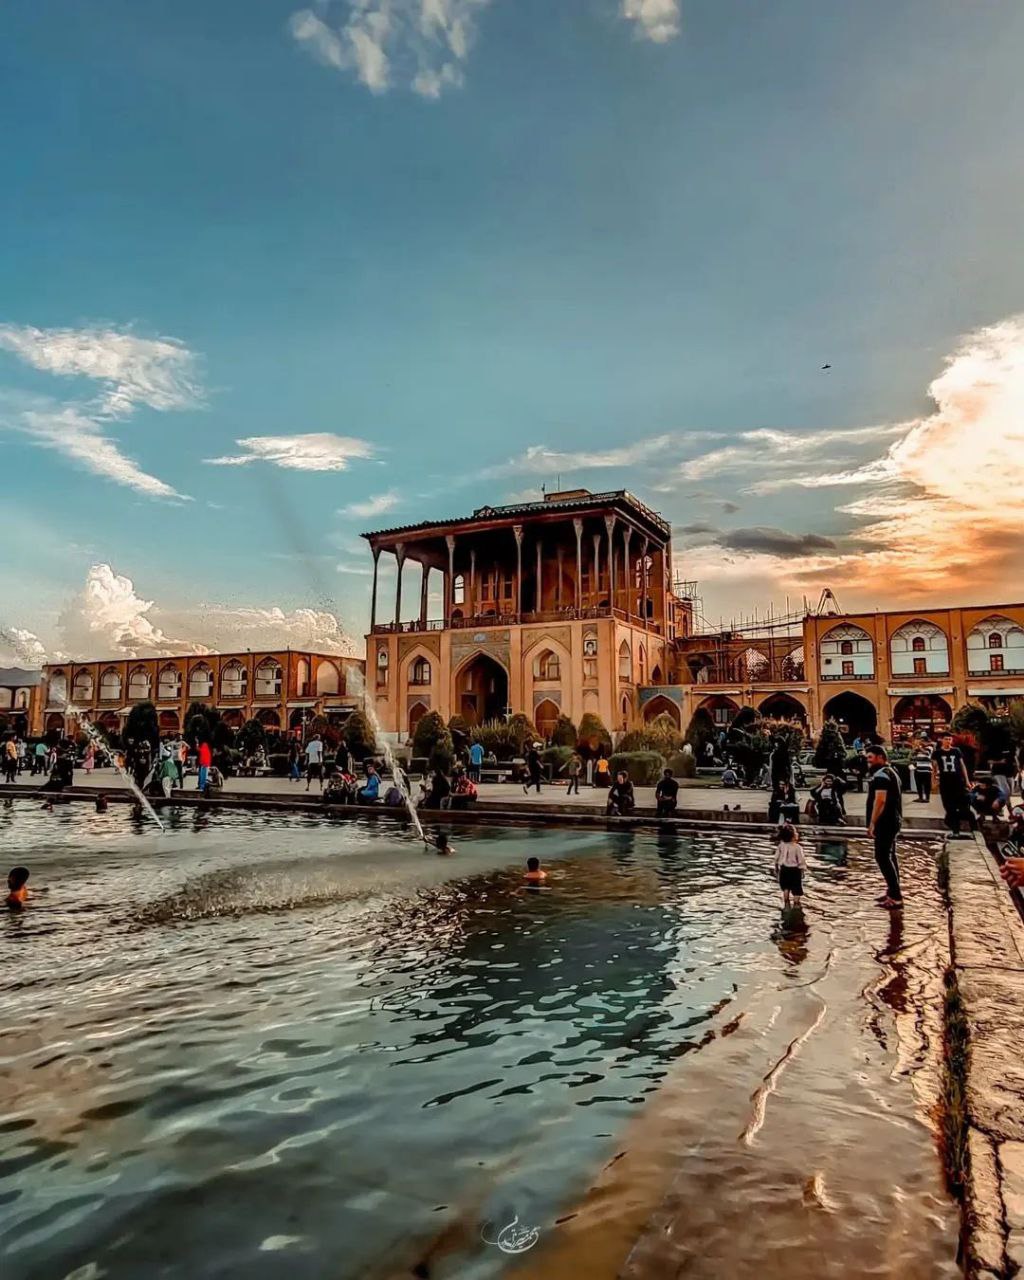 نمایی زیبا از میدان نقش جهان اصفهان